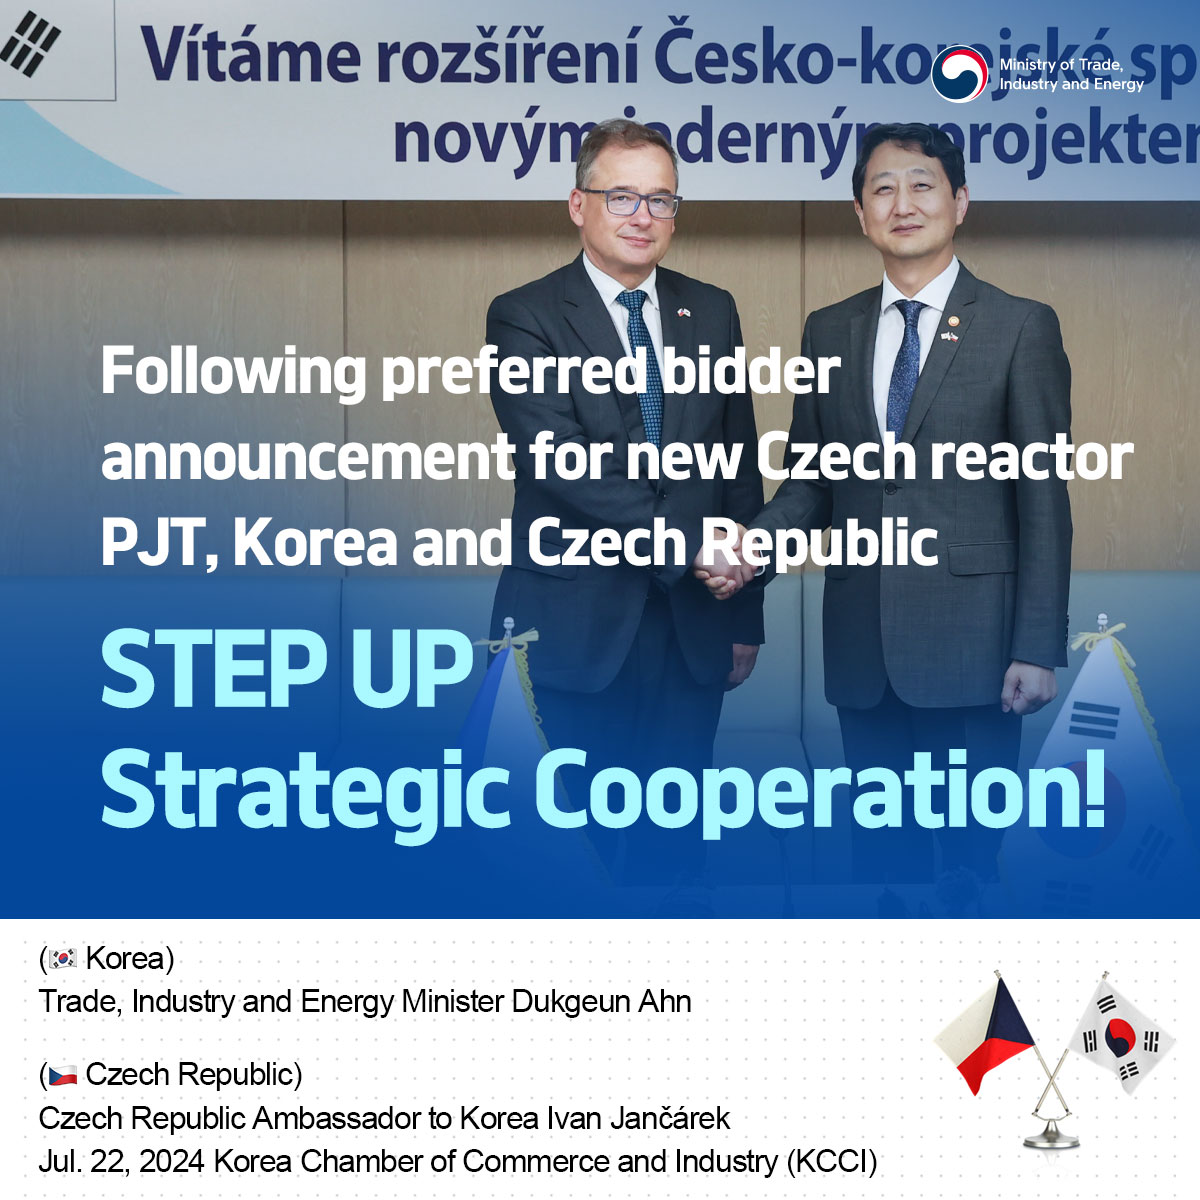 Korea and Czech Republic step up strategic cooperation following new Czech reactor PJT's preferred bidder announcement